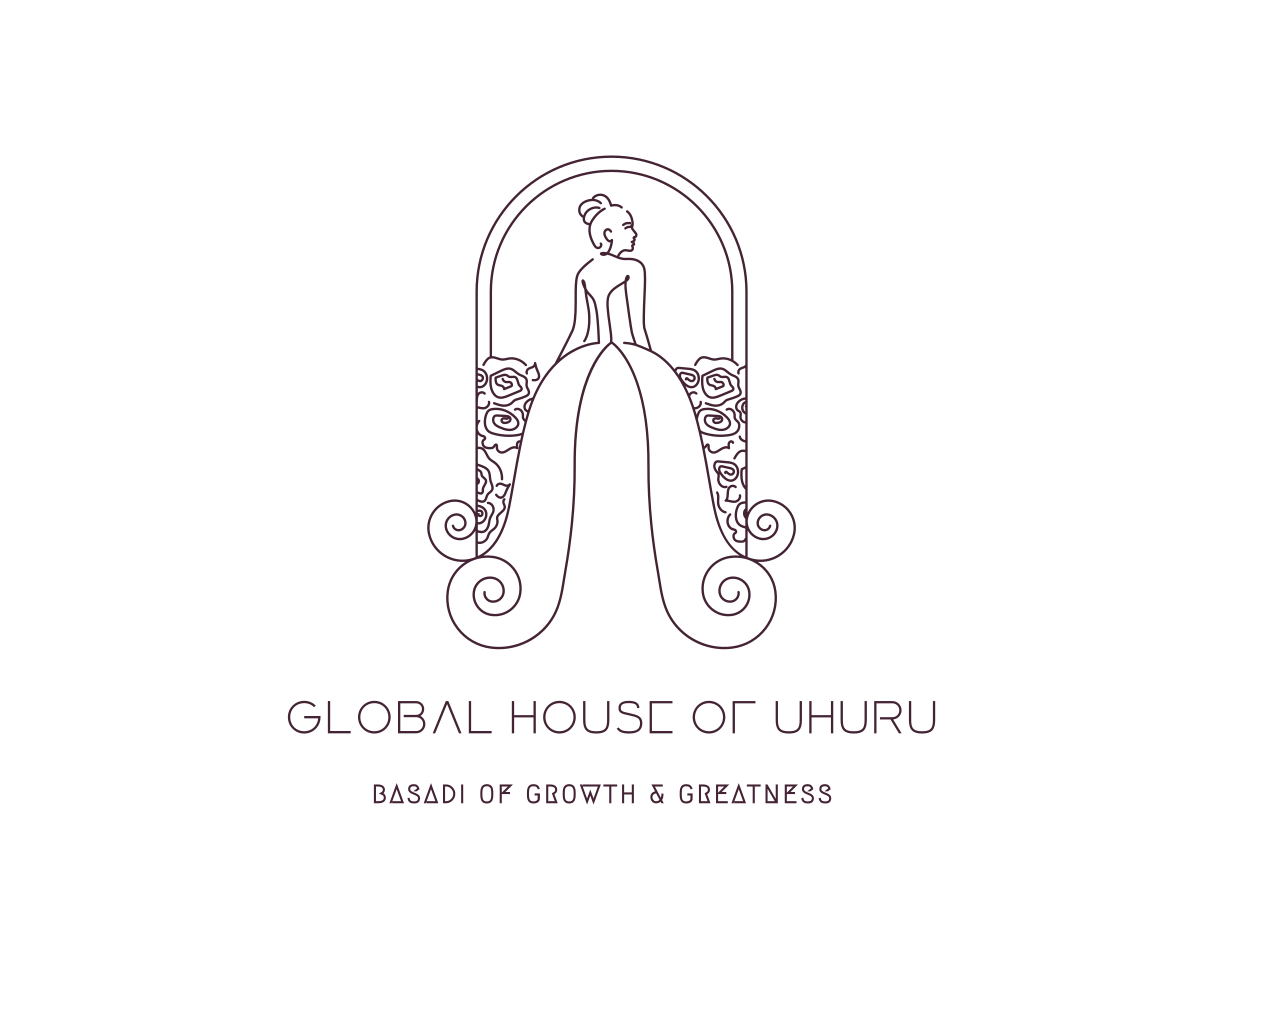 Global House of Uhuru